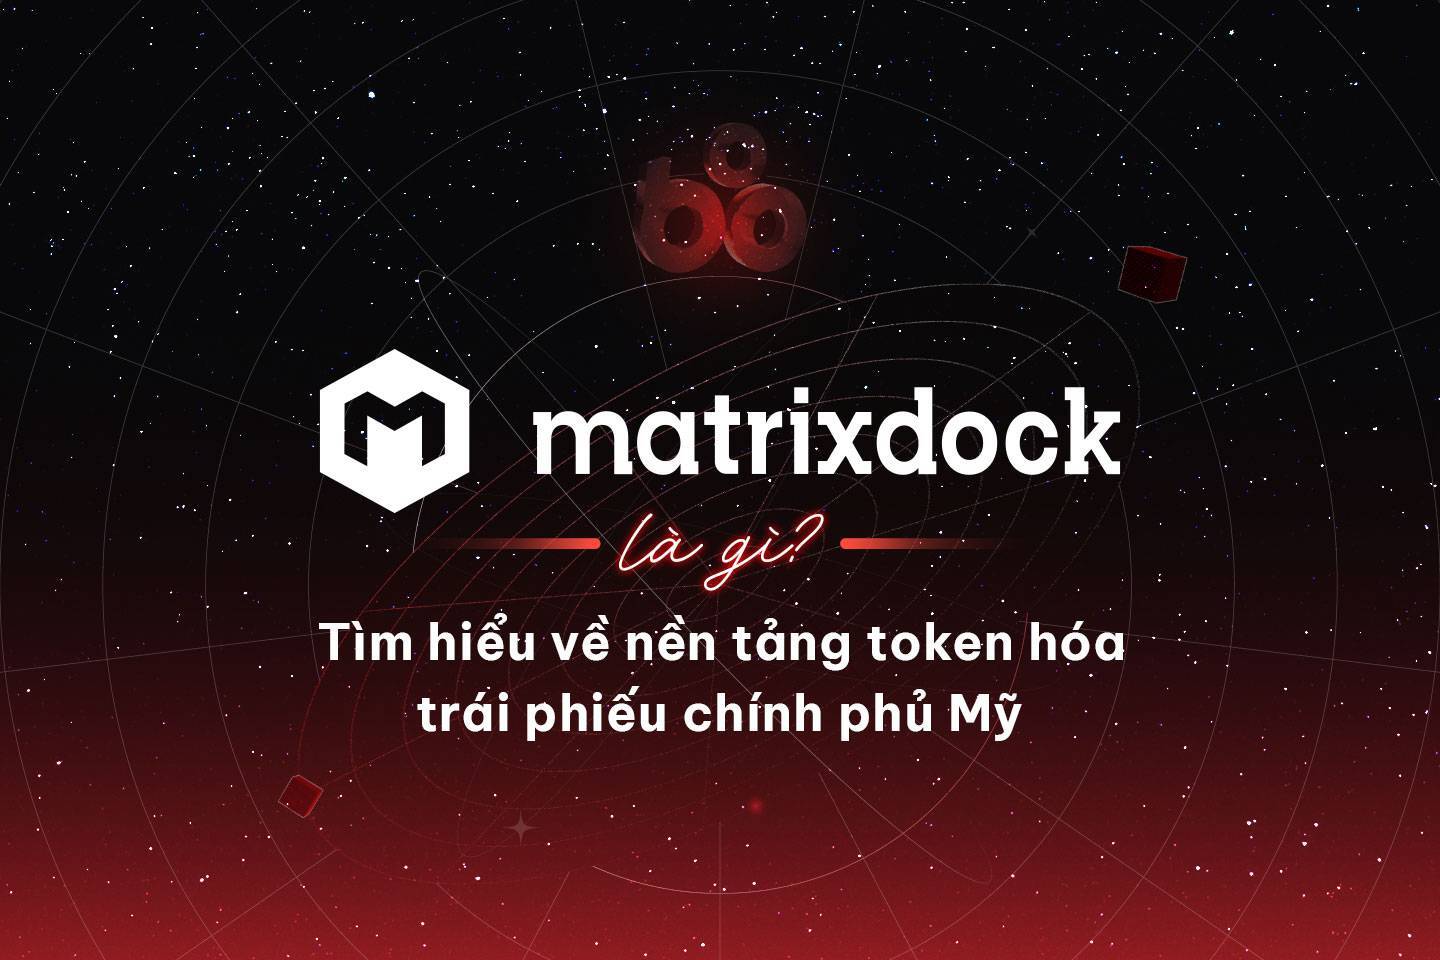 Matrixdock Là Gì Tìm Hiểu Về Nền Tảng Token Hoa Trai Phiêu Chinh Phu My